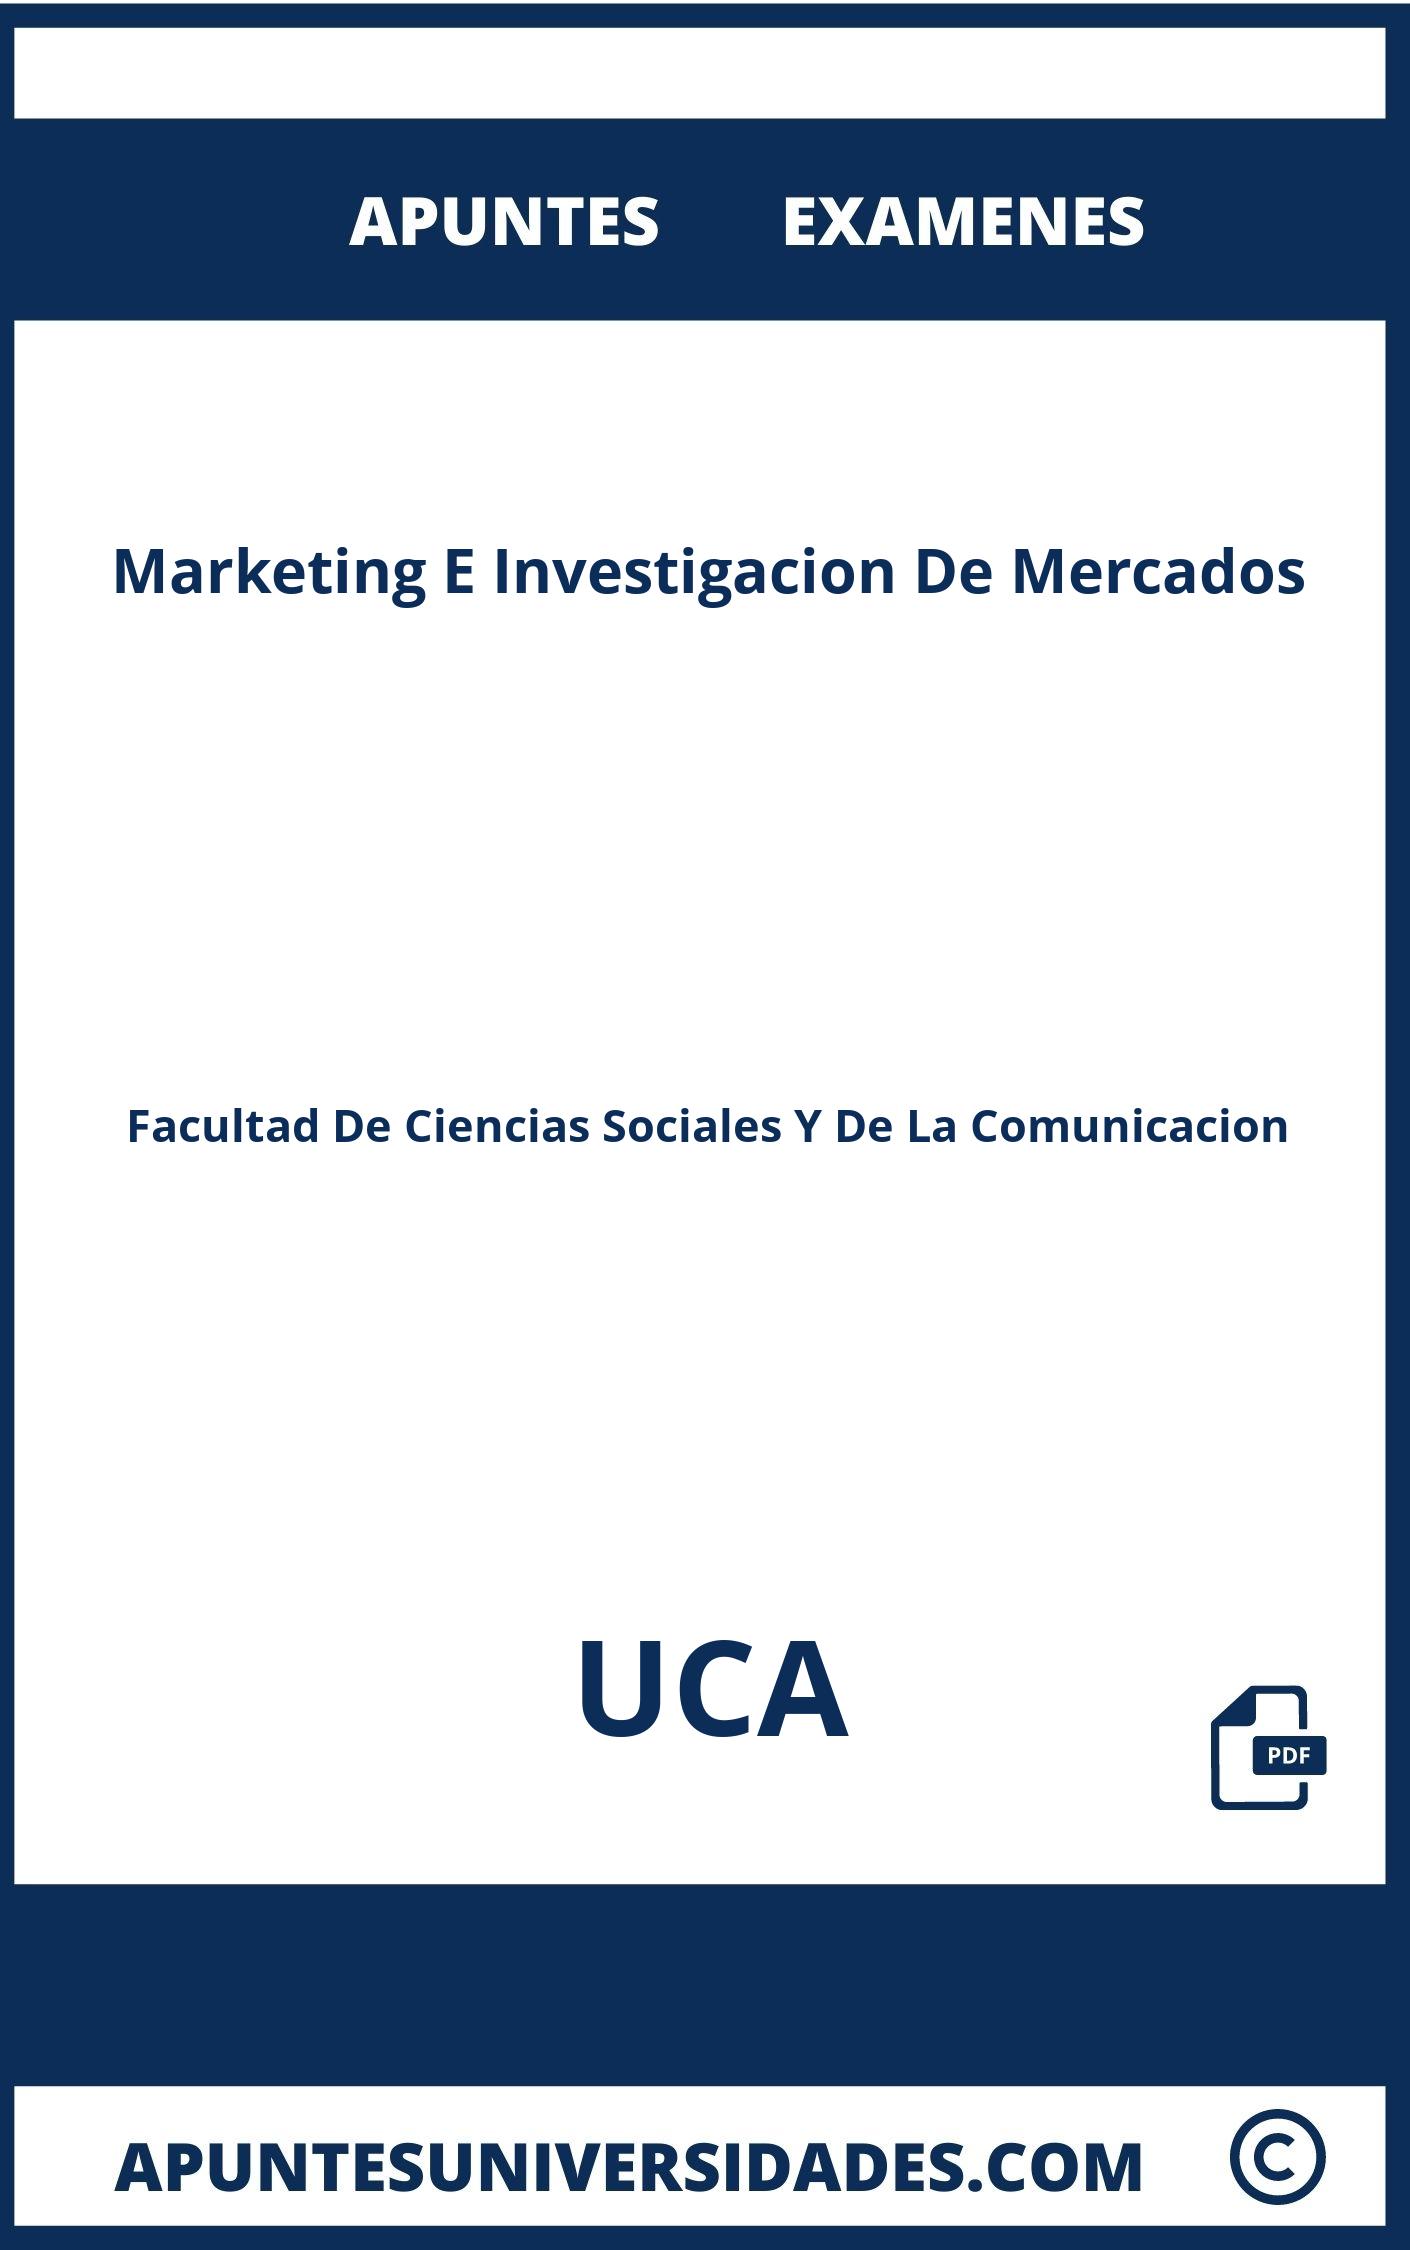 Apuntes Marketing E Investigacion De Mercados UCA y Examenes